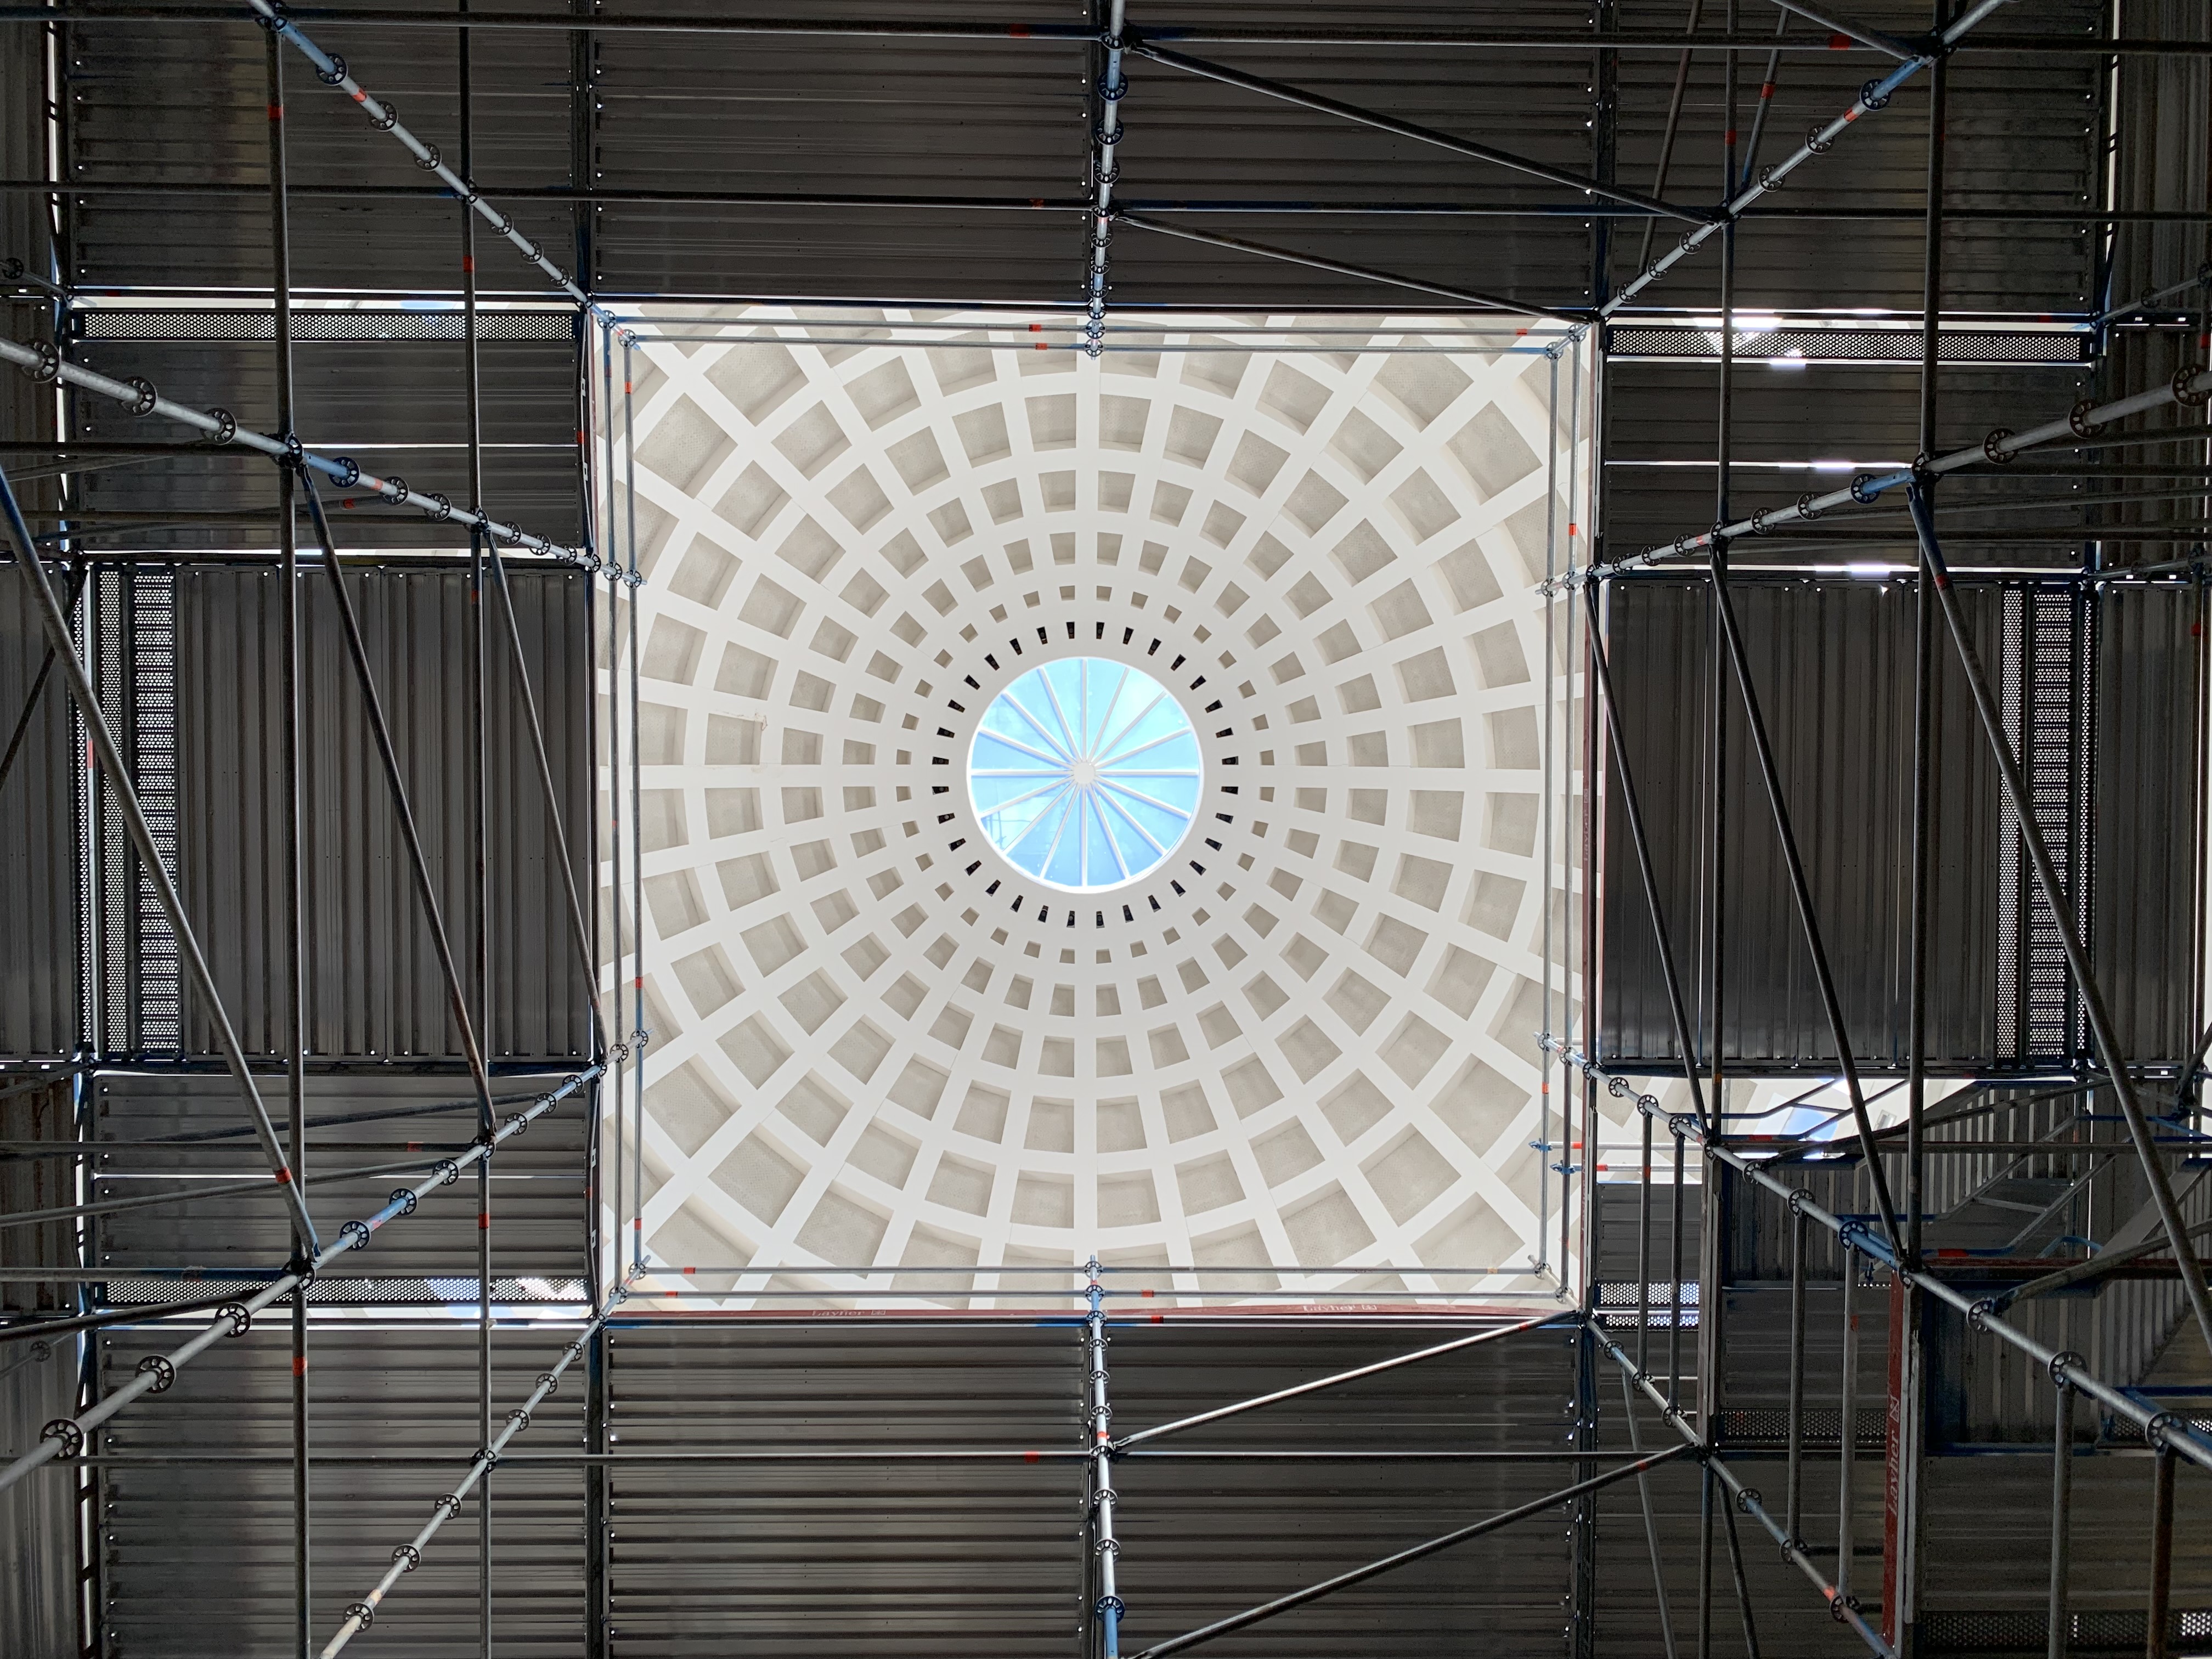 Das Bild zeigt die von Baugerüsten umgebene Kuppel im Lesesaal der Badischen Landesbibliothek.